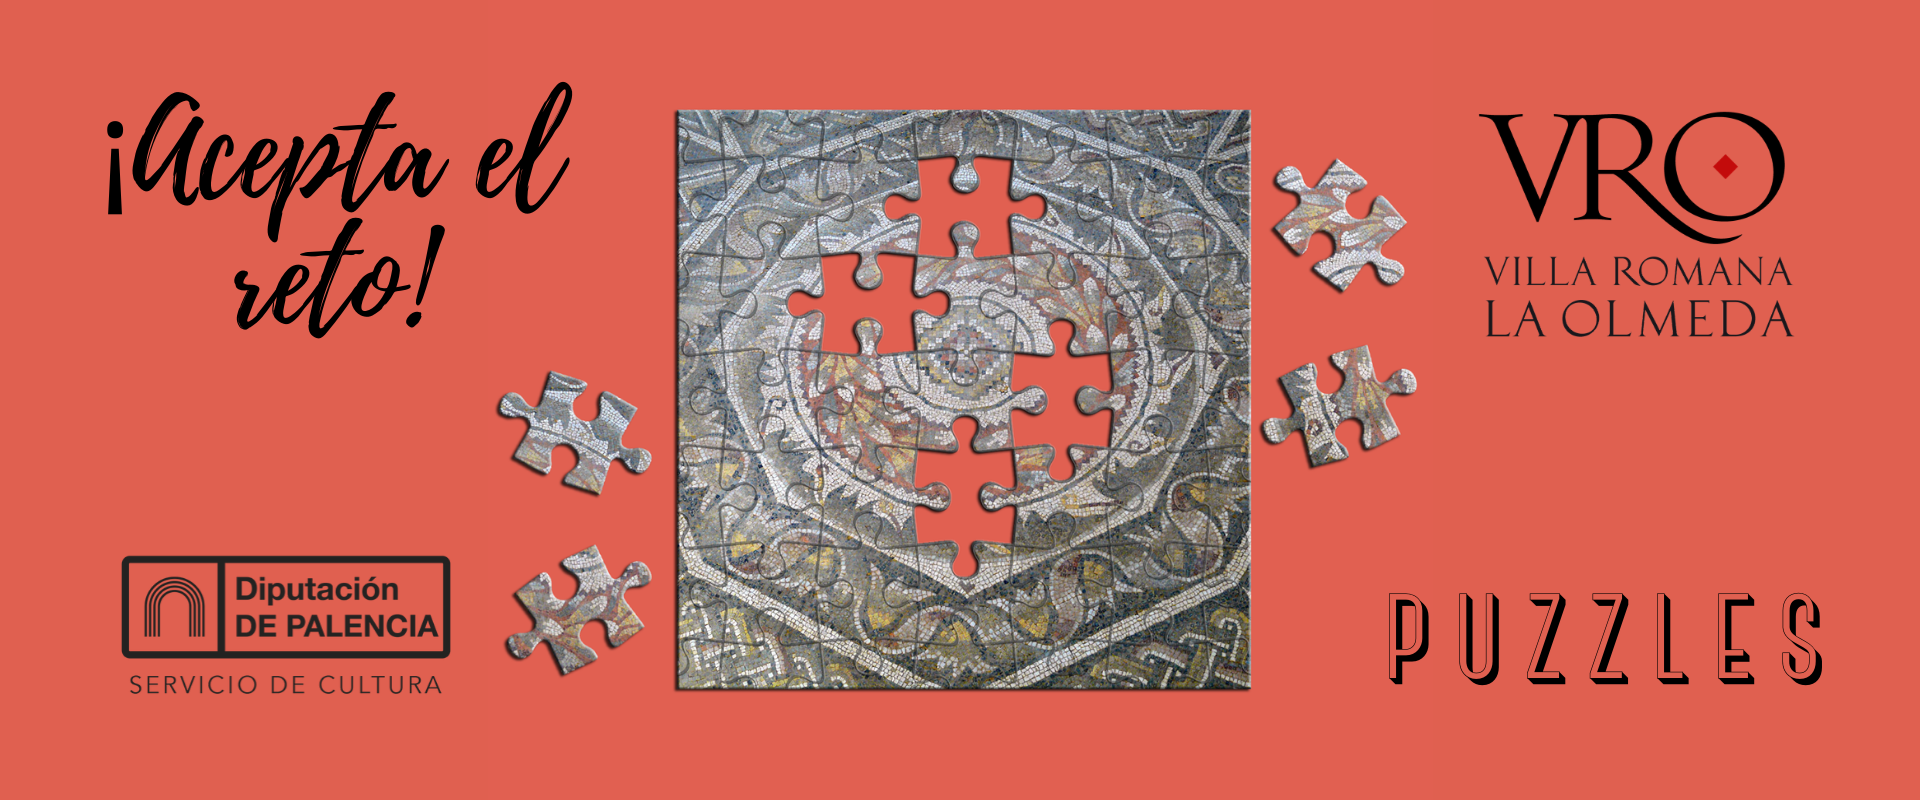 Puzzles mosaico